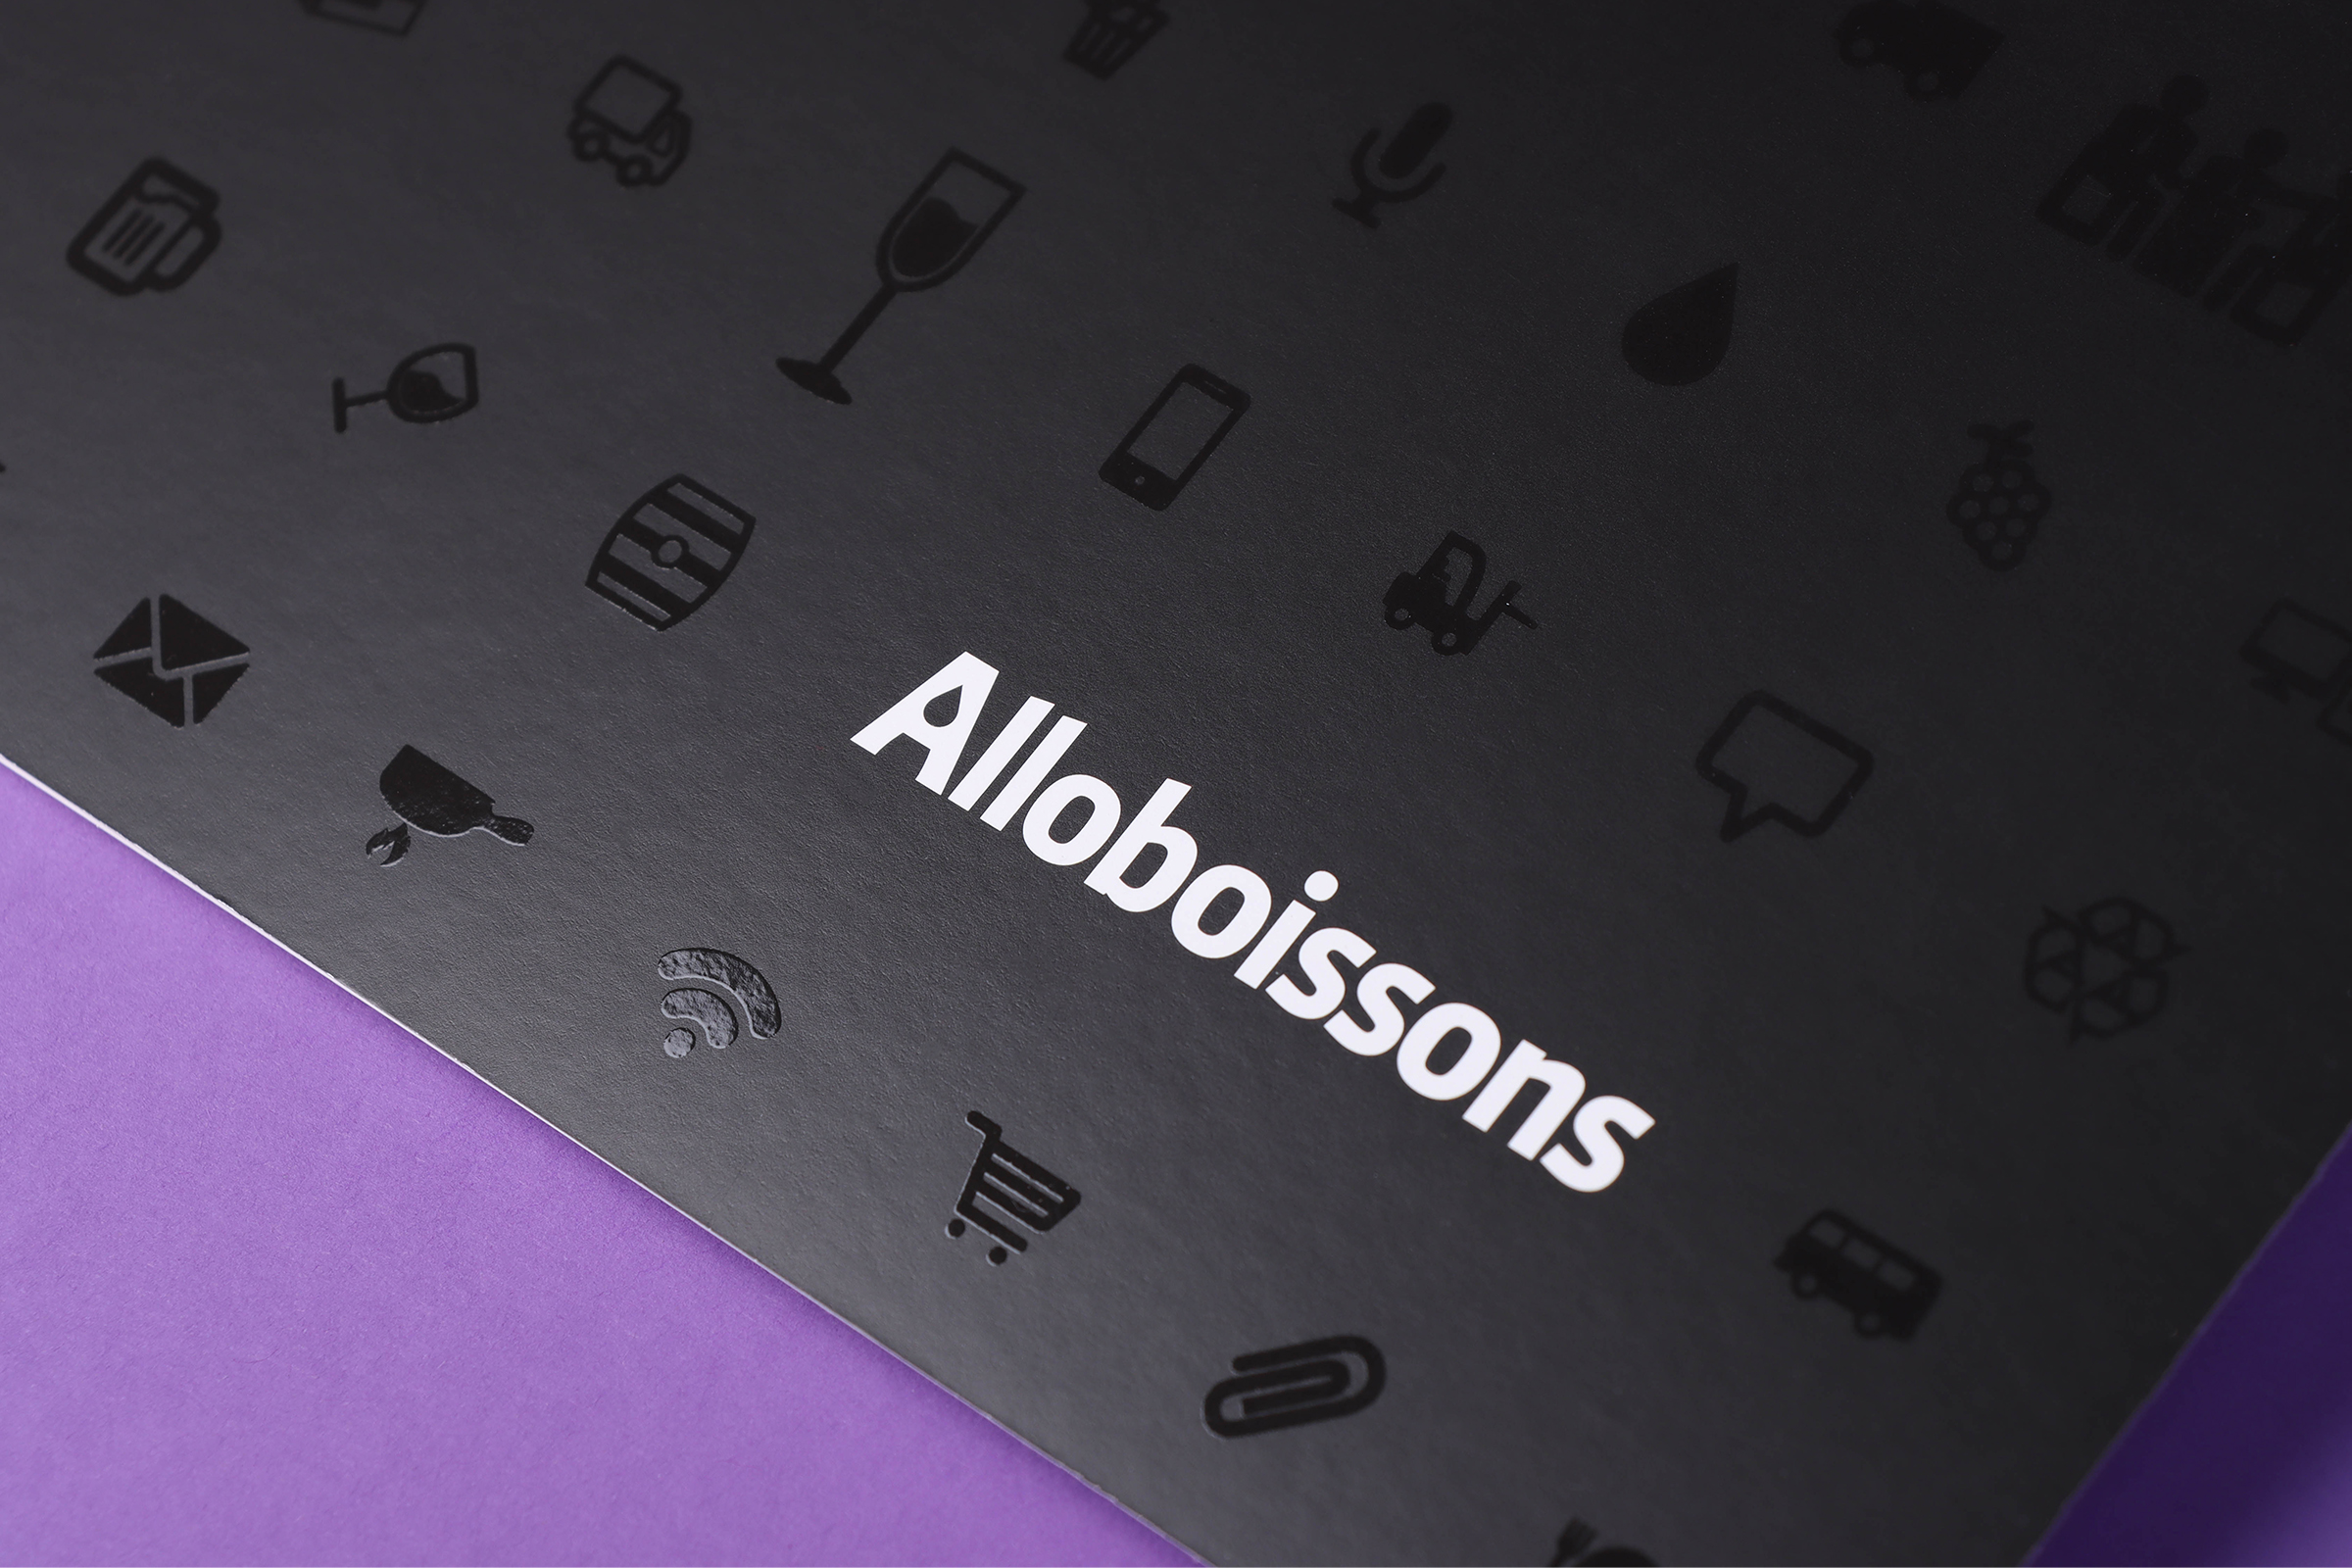 Zoom sur la couverture d'une invitation pour Alloboissons, avec encre noire et vernis sélectif brillant et tactile.